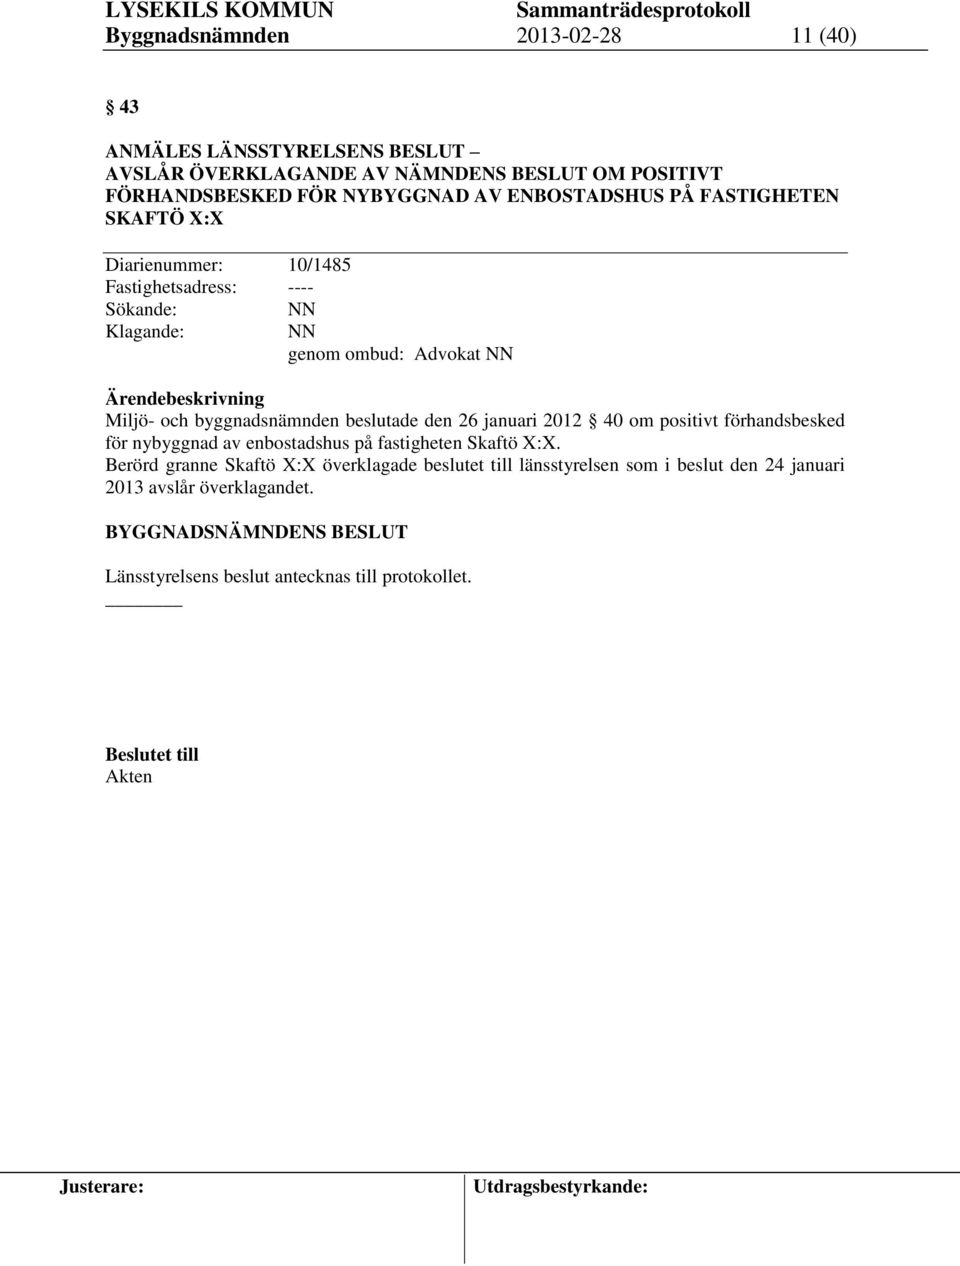 beslutade den 26 januari 2012 40 om positivt förhandsbesked för nybyggnad av enbostadshus på fastigheten Skaftö X:X.